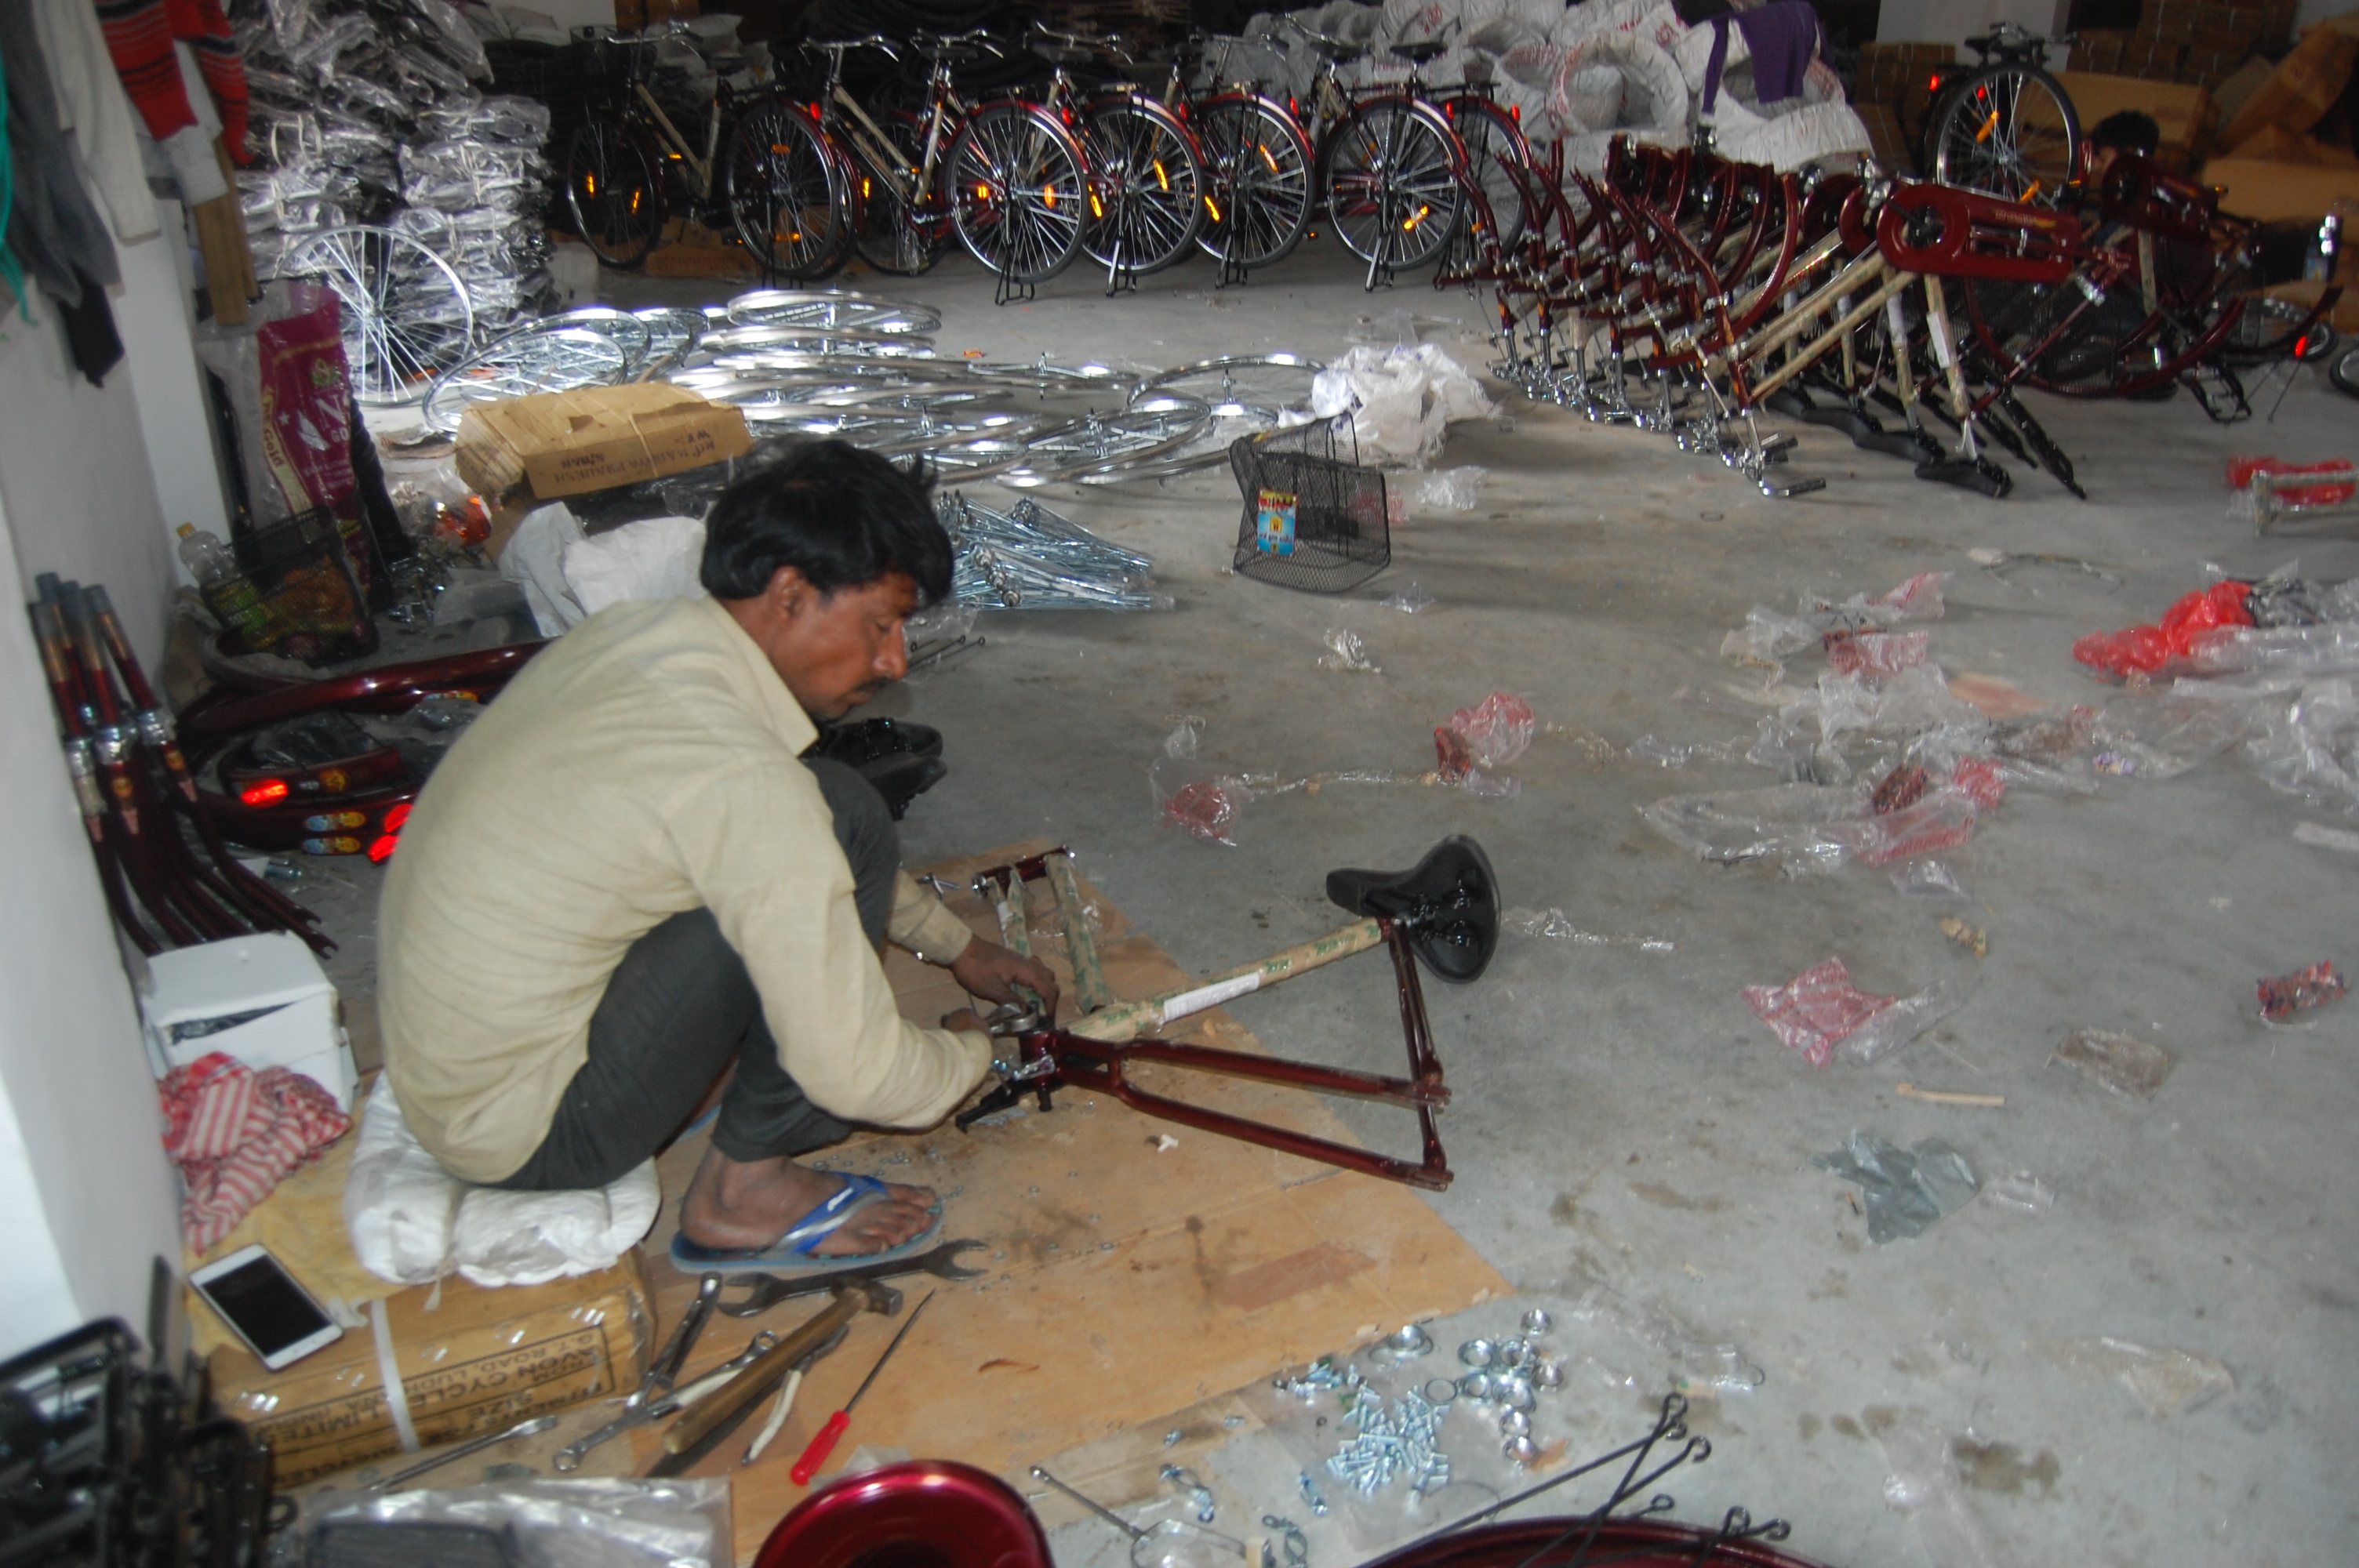 Workers of Uttar Pradesh-Bihar, working in the district,